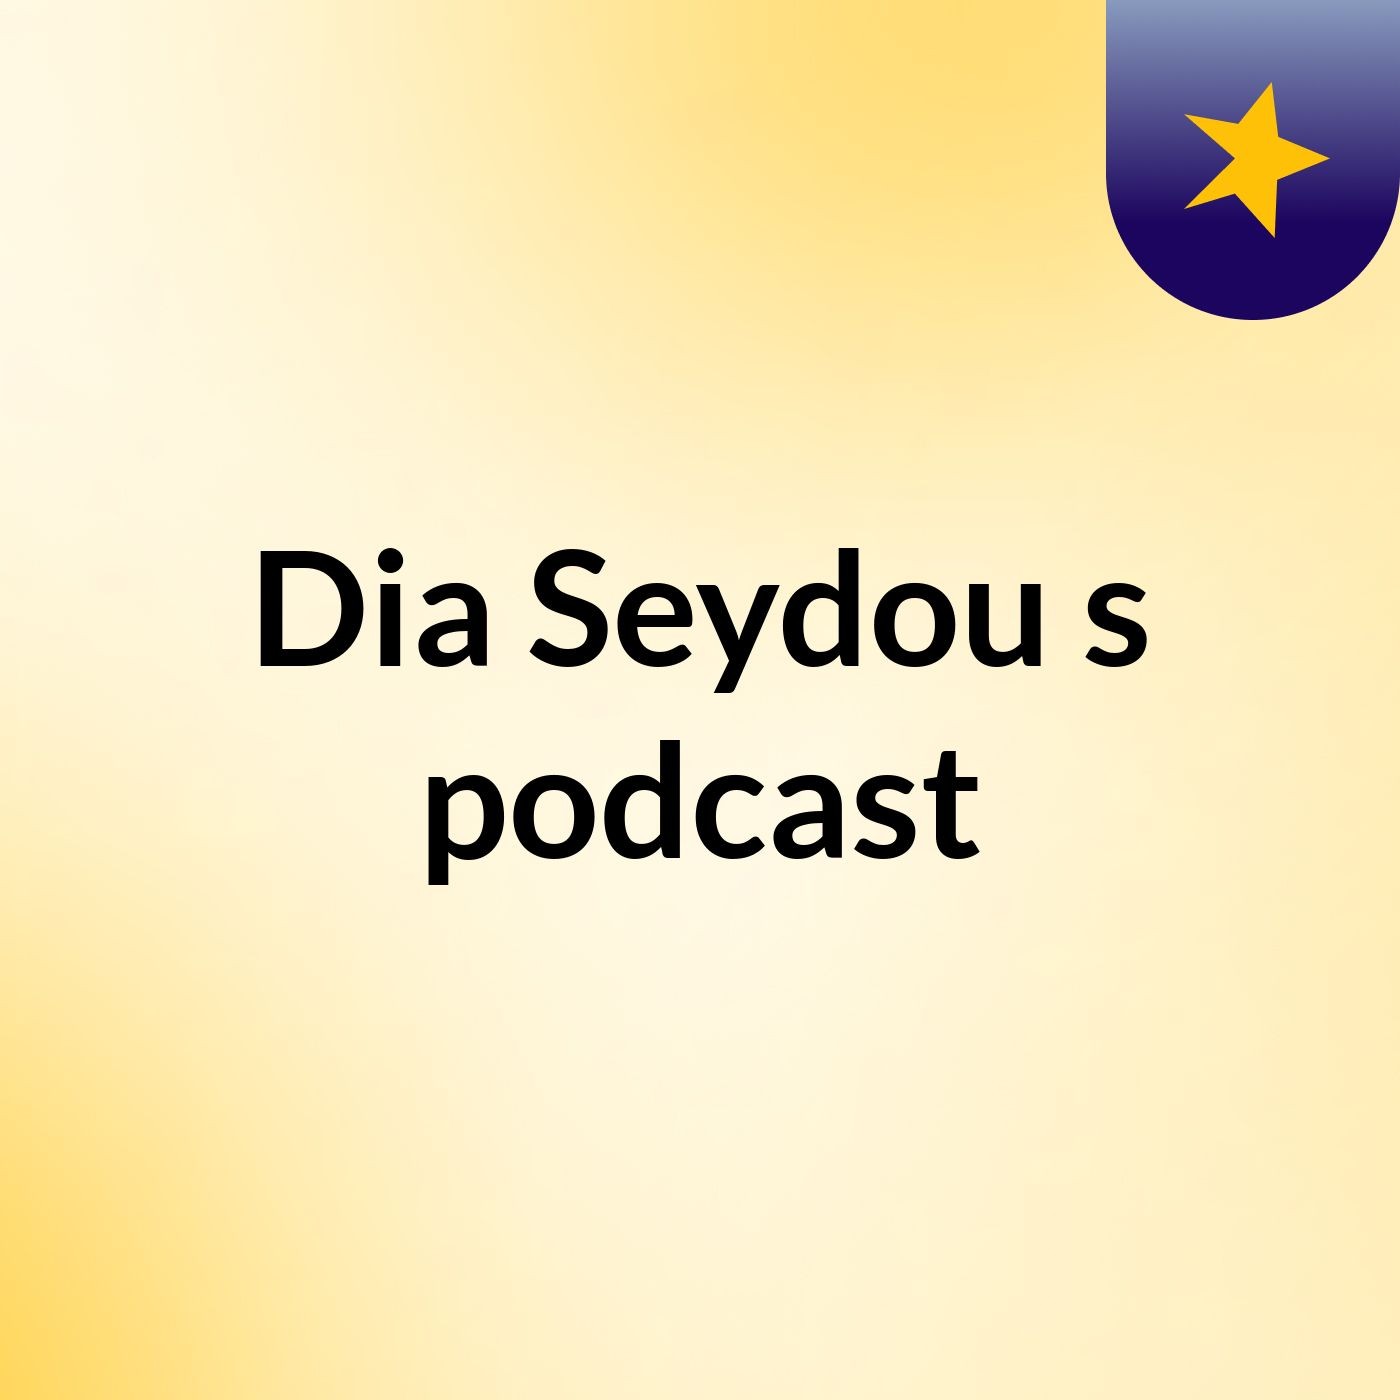 Episode 3 - Dia Seydou's podcast